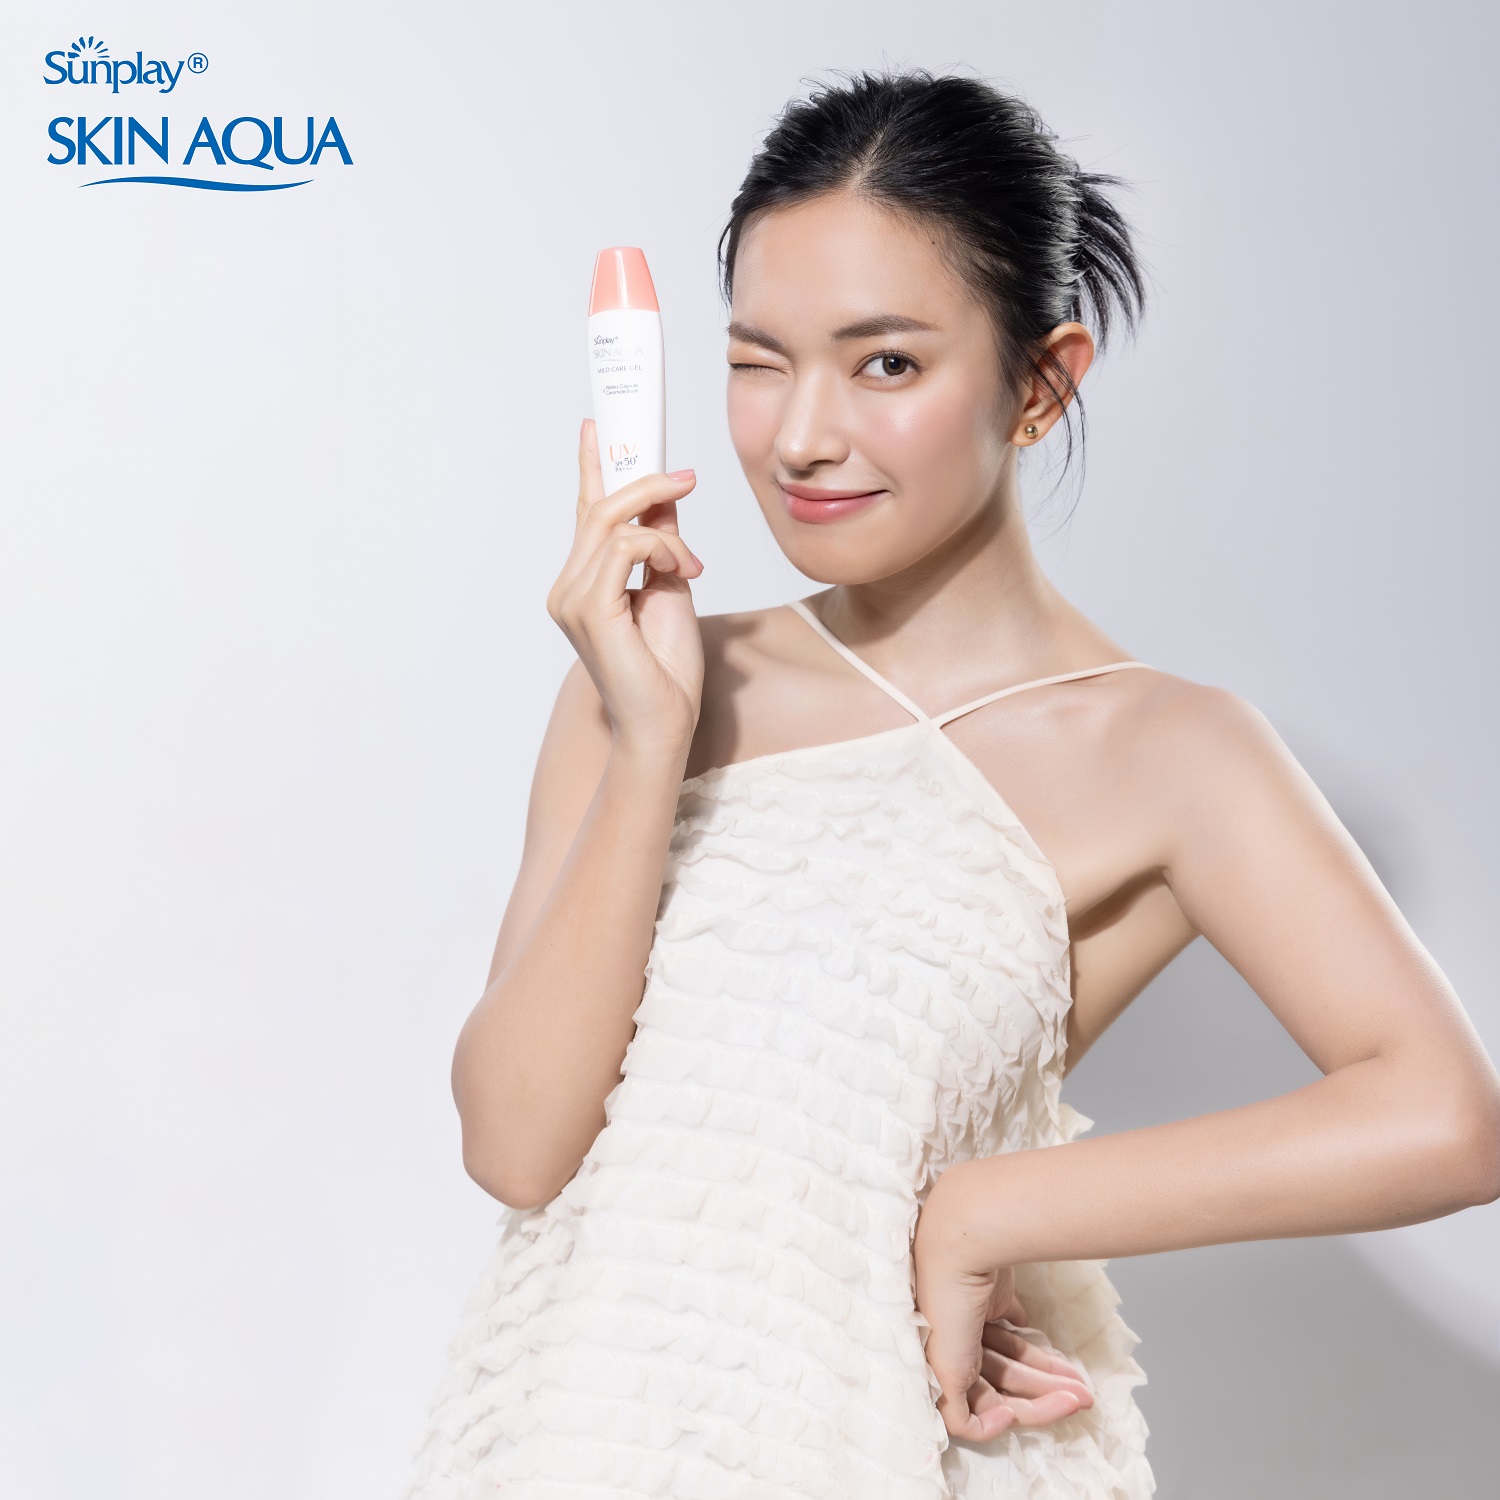 Kem chống nắng Skin Aqua cho da nhạy cảm dạng gel dùng hàng ngày Sunplay Skin Aqua Mild Care Gel SPF50+ PA+++ 25g